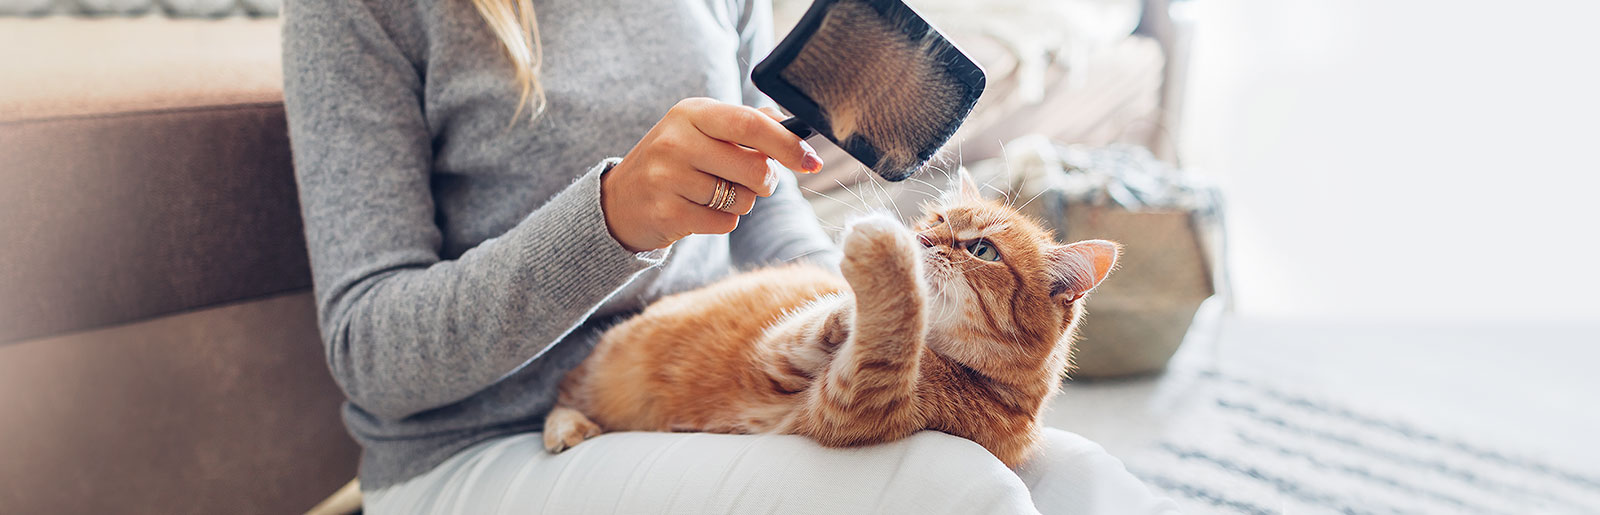 Fellpflege Katzen: Für ein glänzendes und gesundes Katzenfell